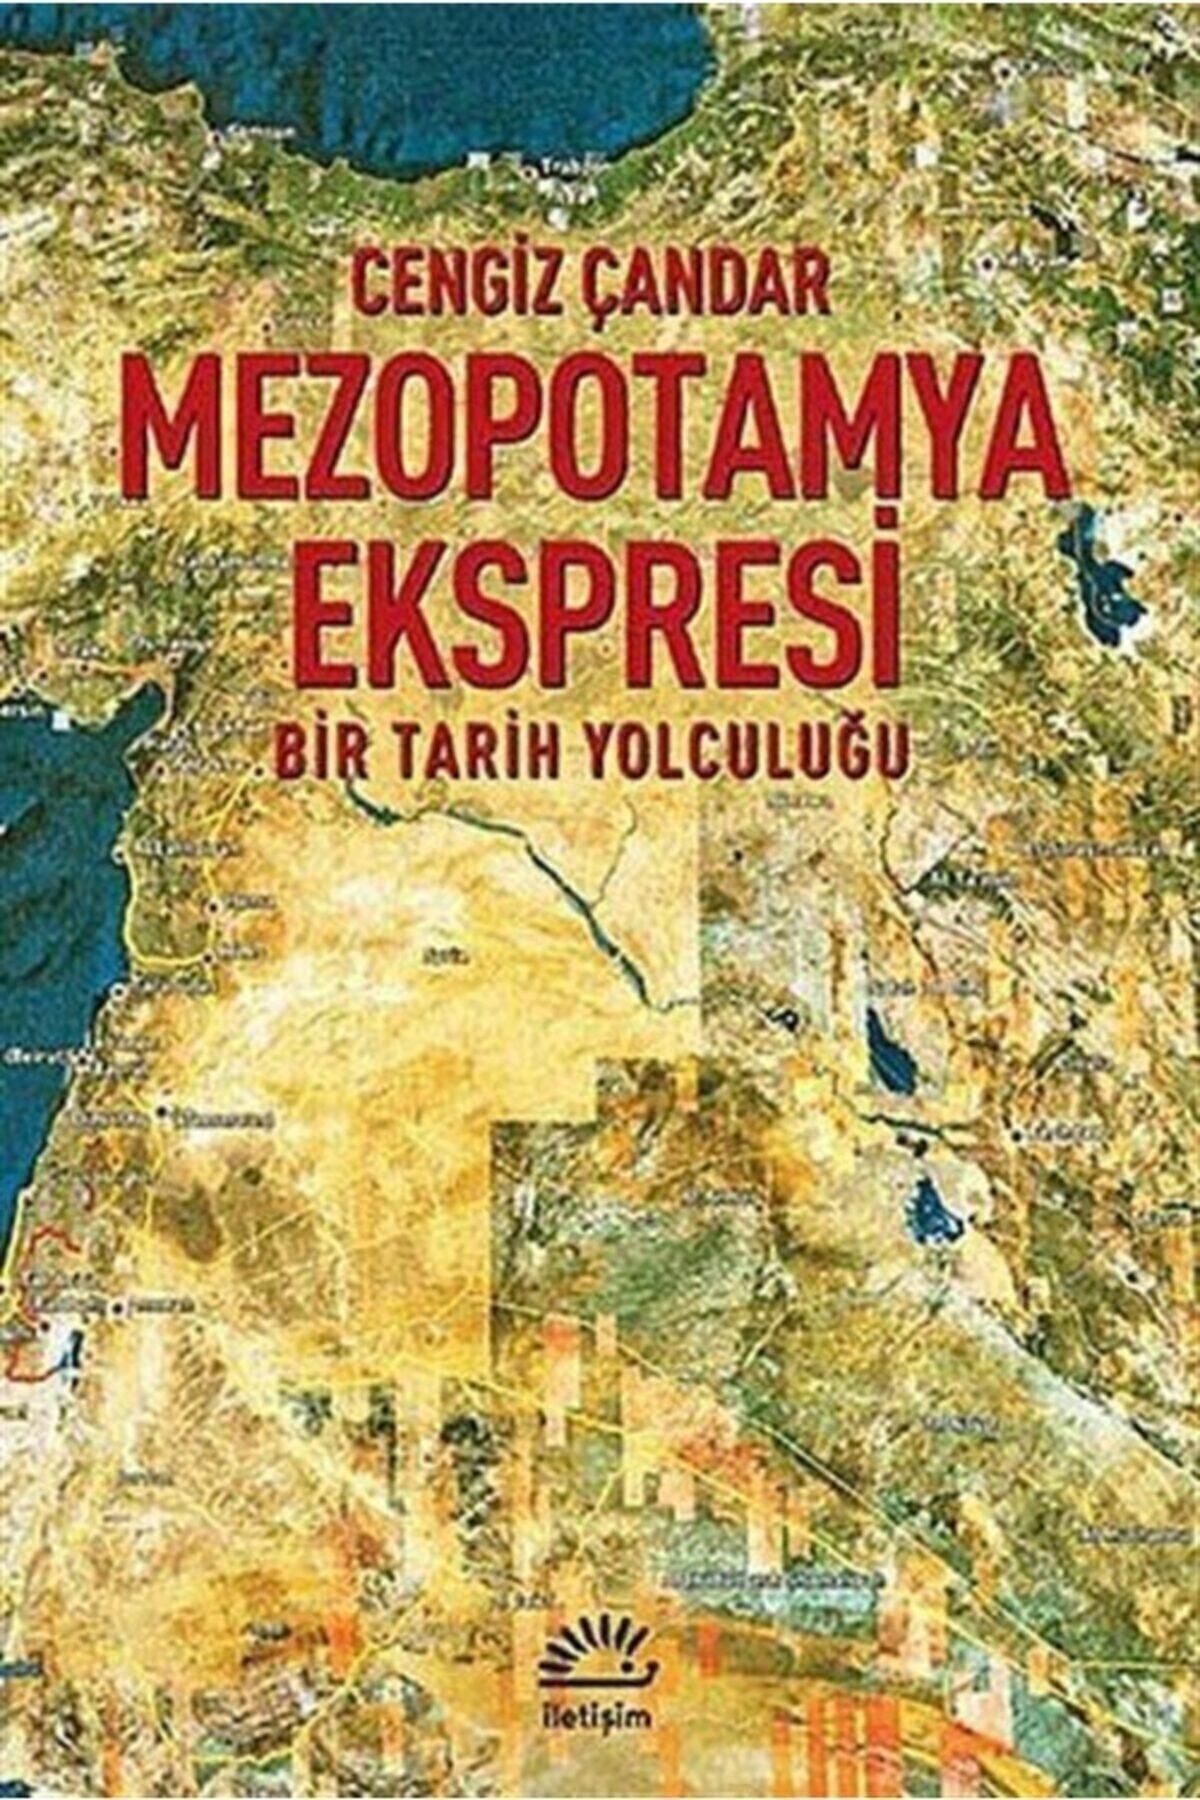 İletişim Yayınları Mezopotamya Ekspresi Cengiz Çandar - Cengiz Çandar